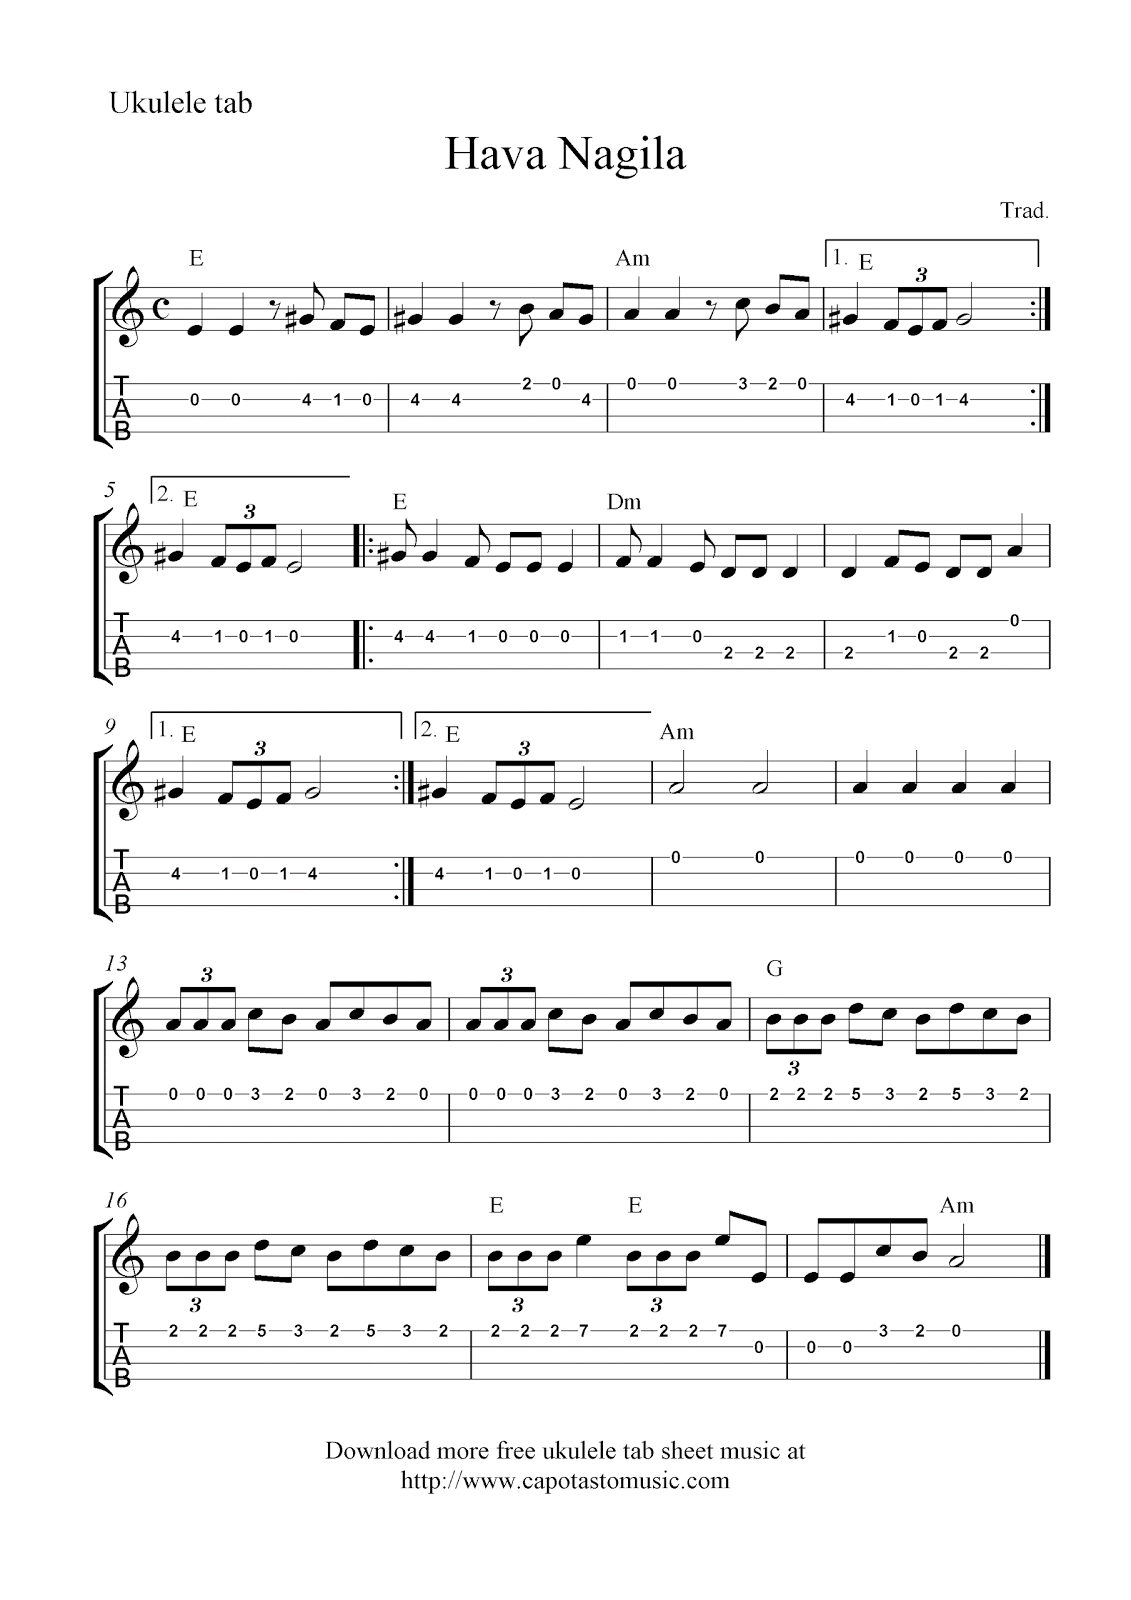 free ukulele tab sheet music